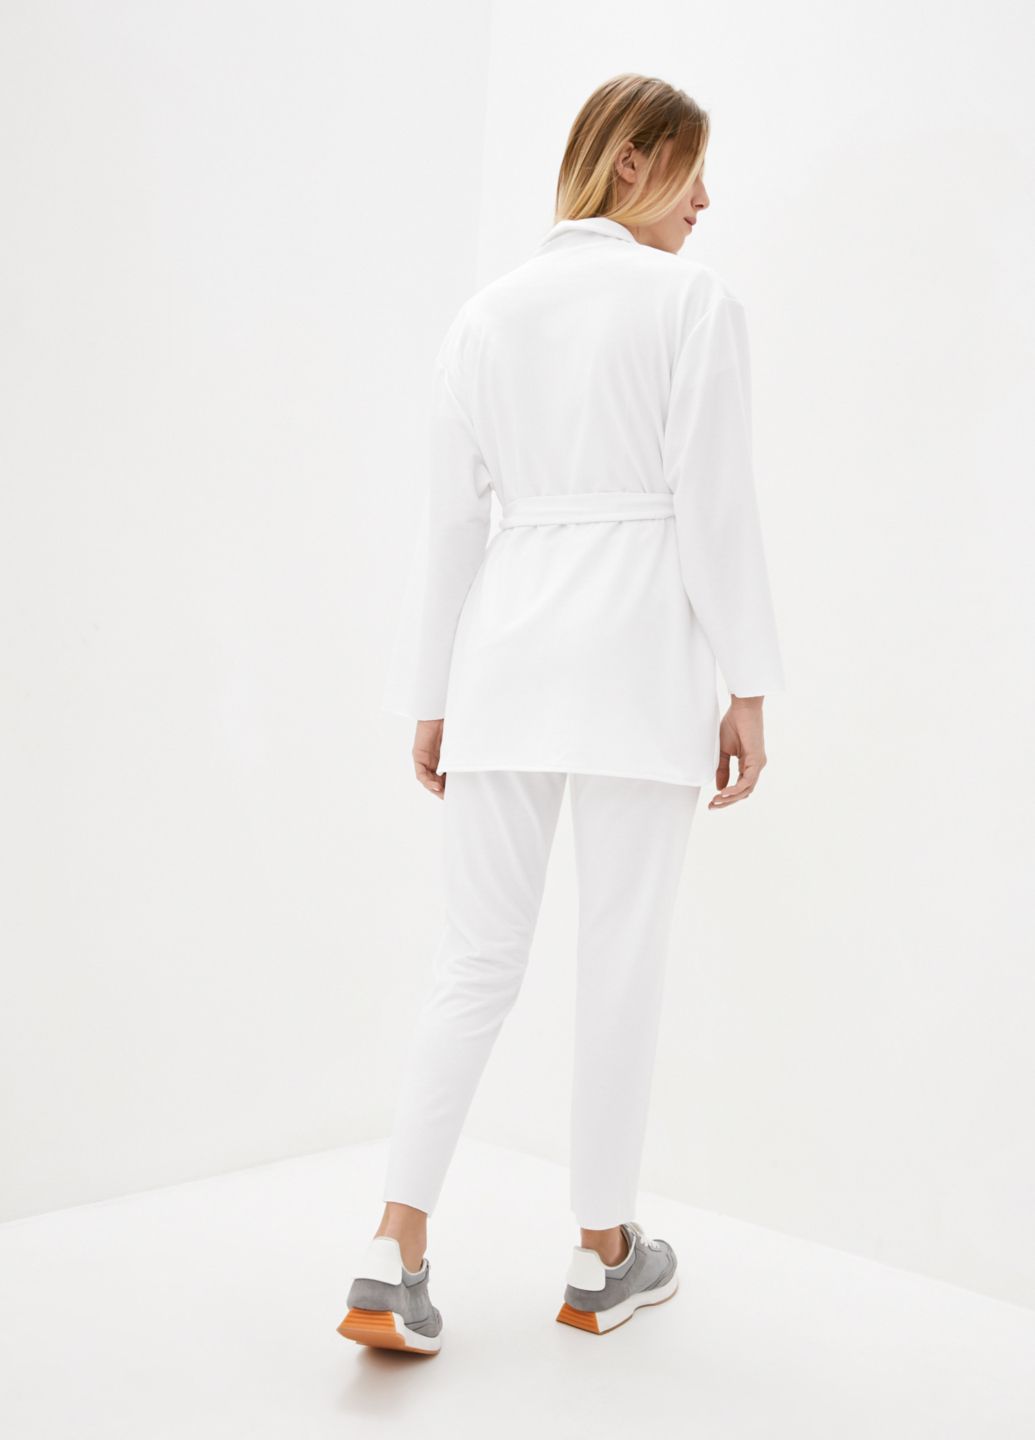 Купить Белый трикотажный женский жакет с поясом Merlini Монца 120000001, размер 42-44 в интернет-магазине